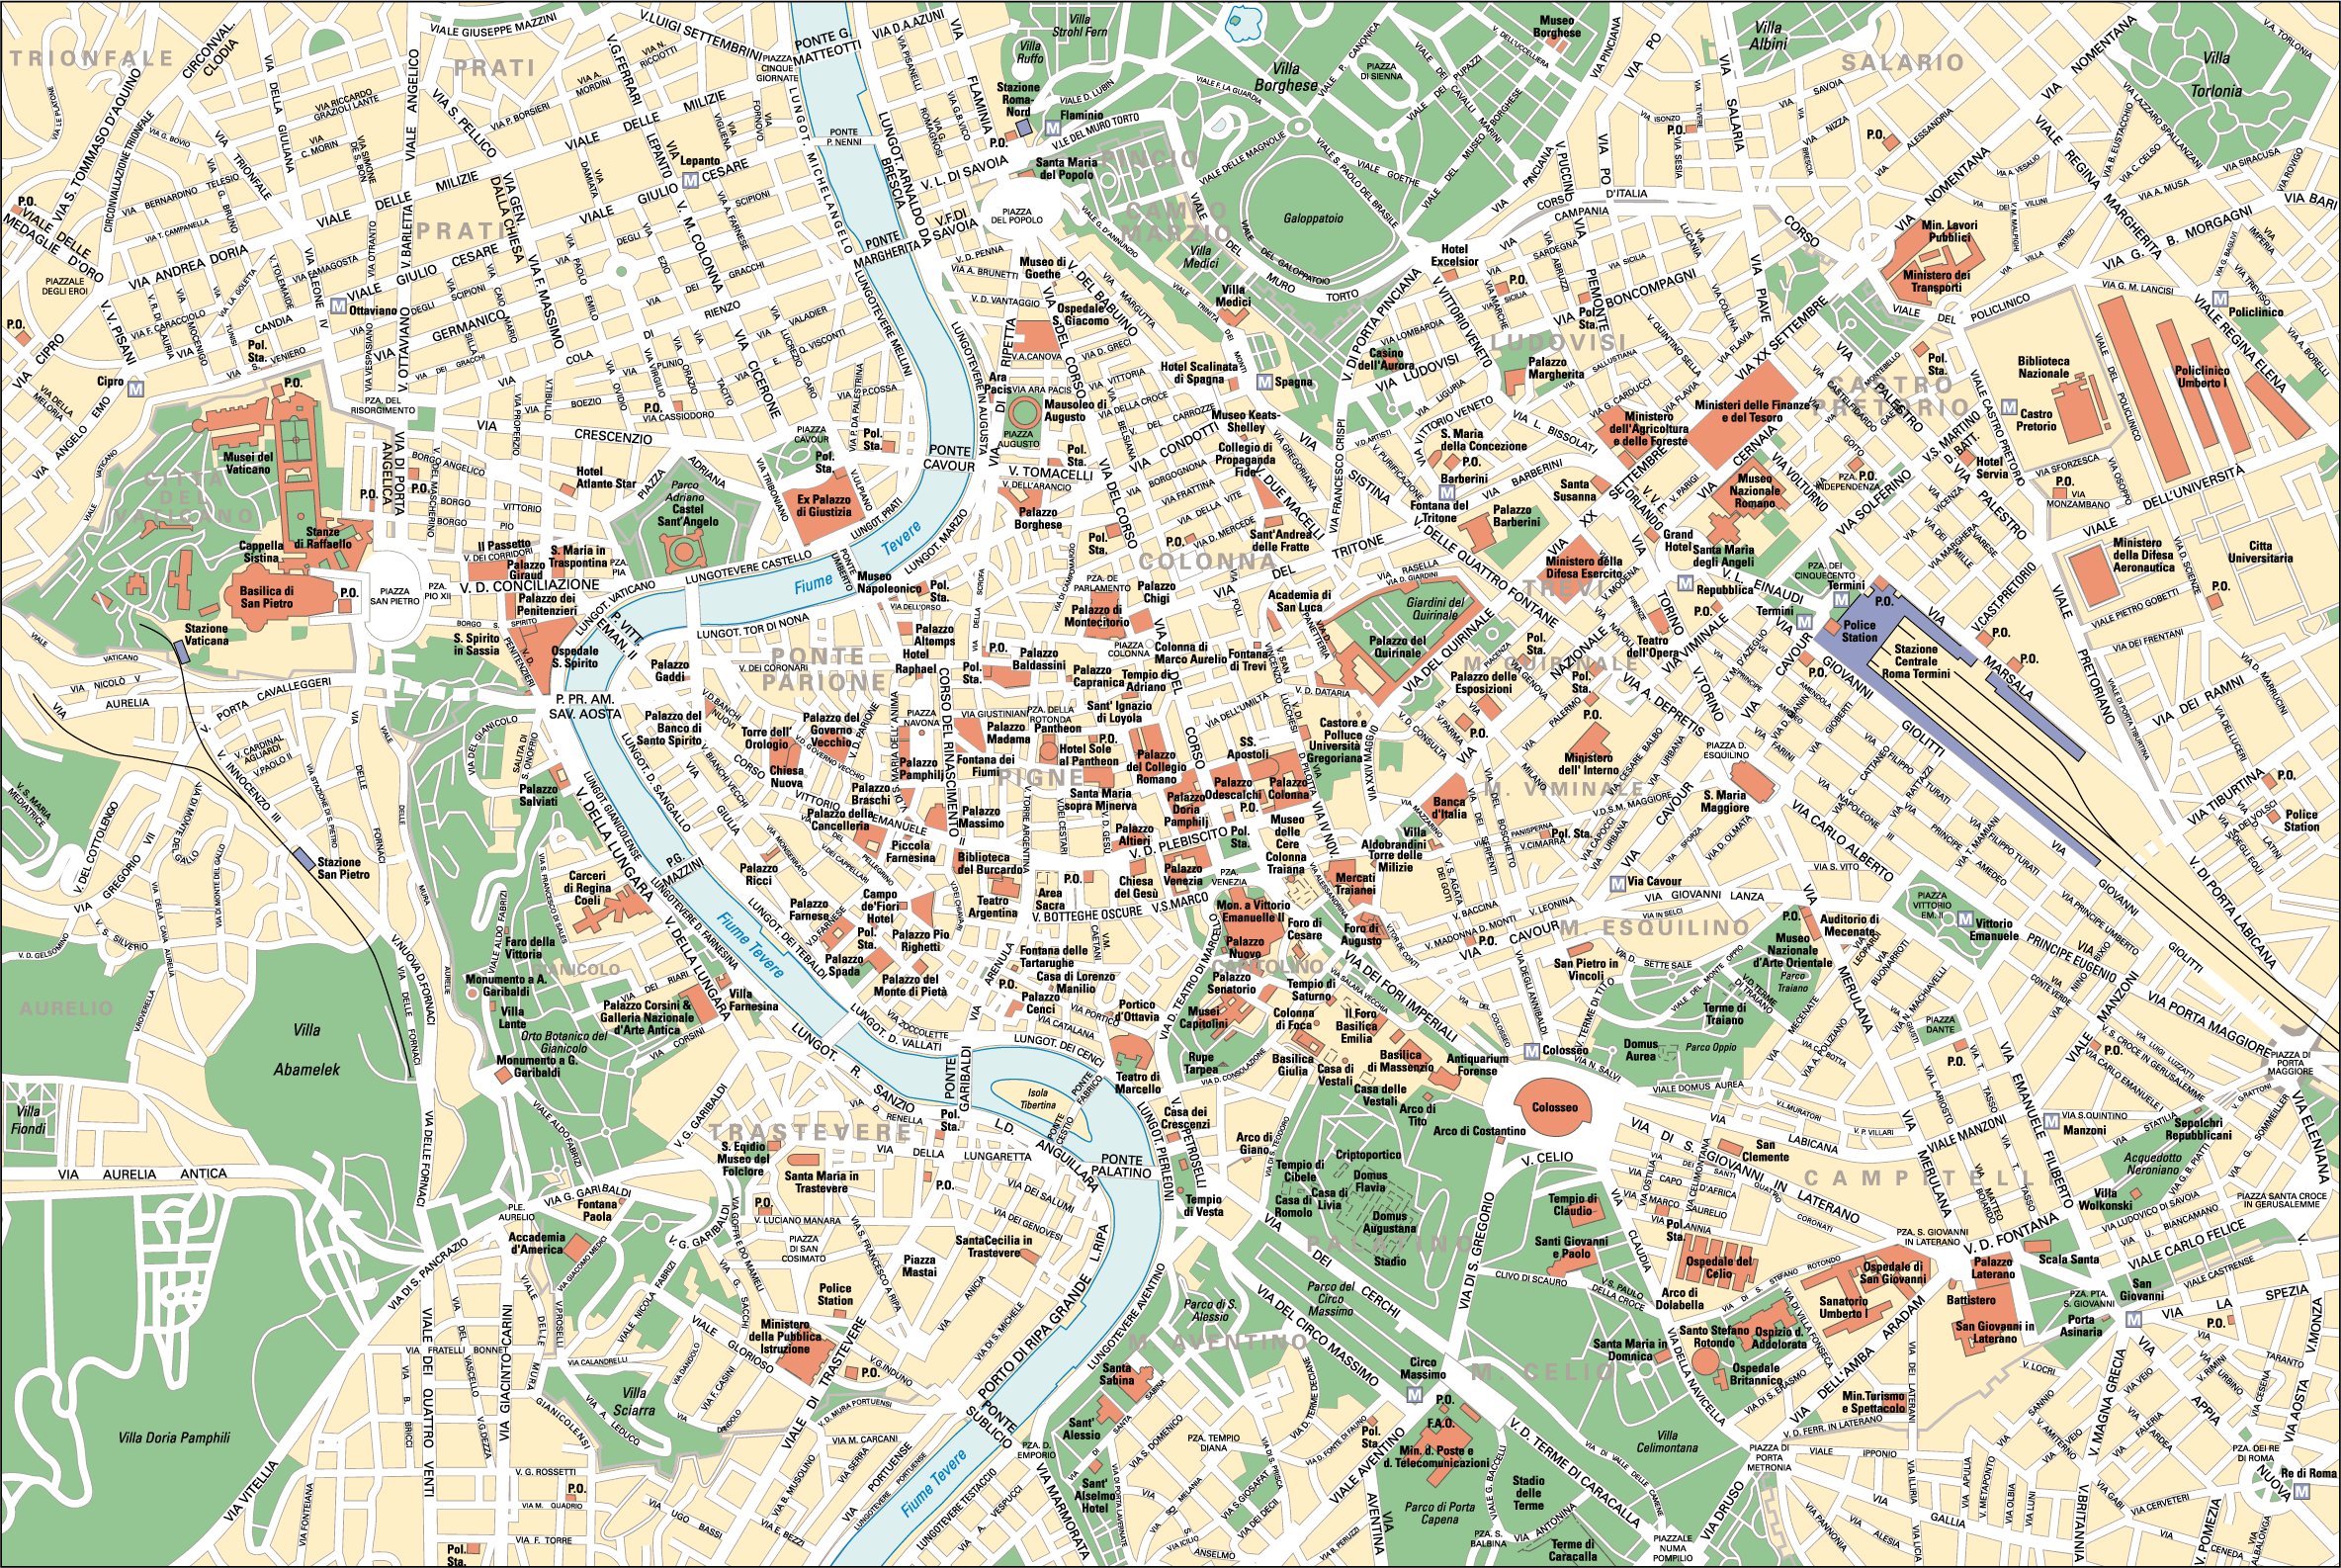 область со столицей рим